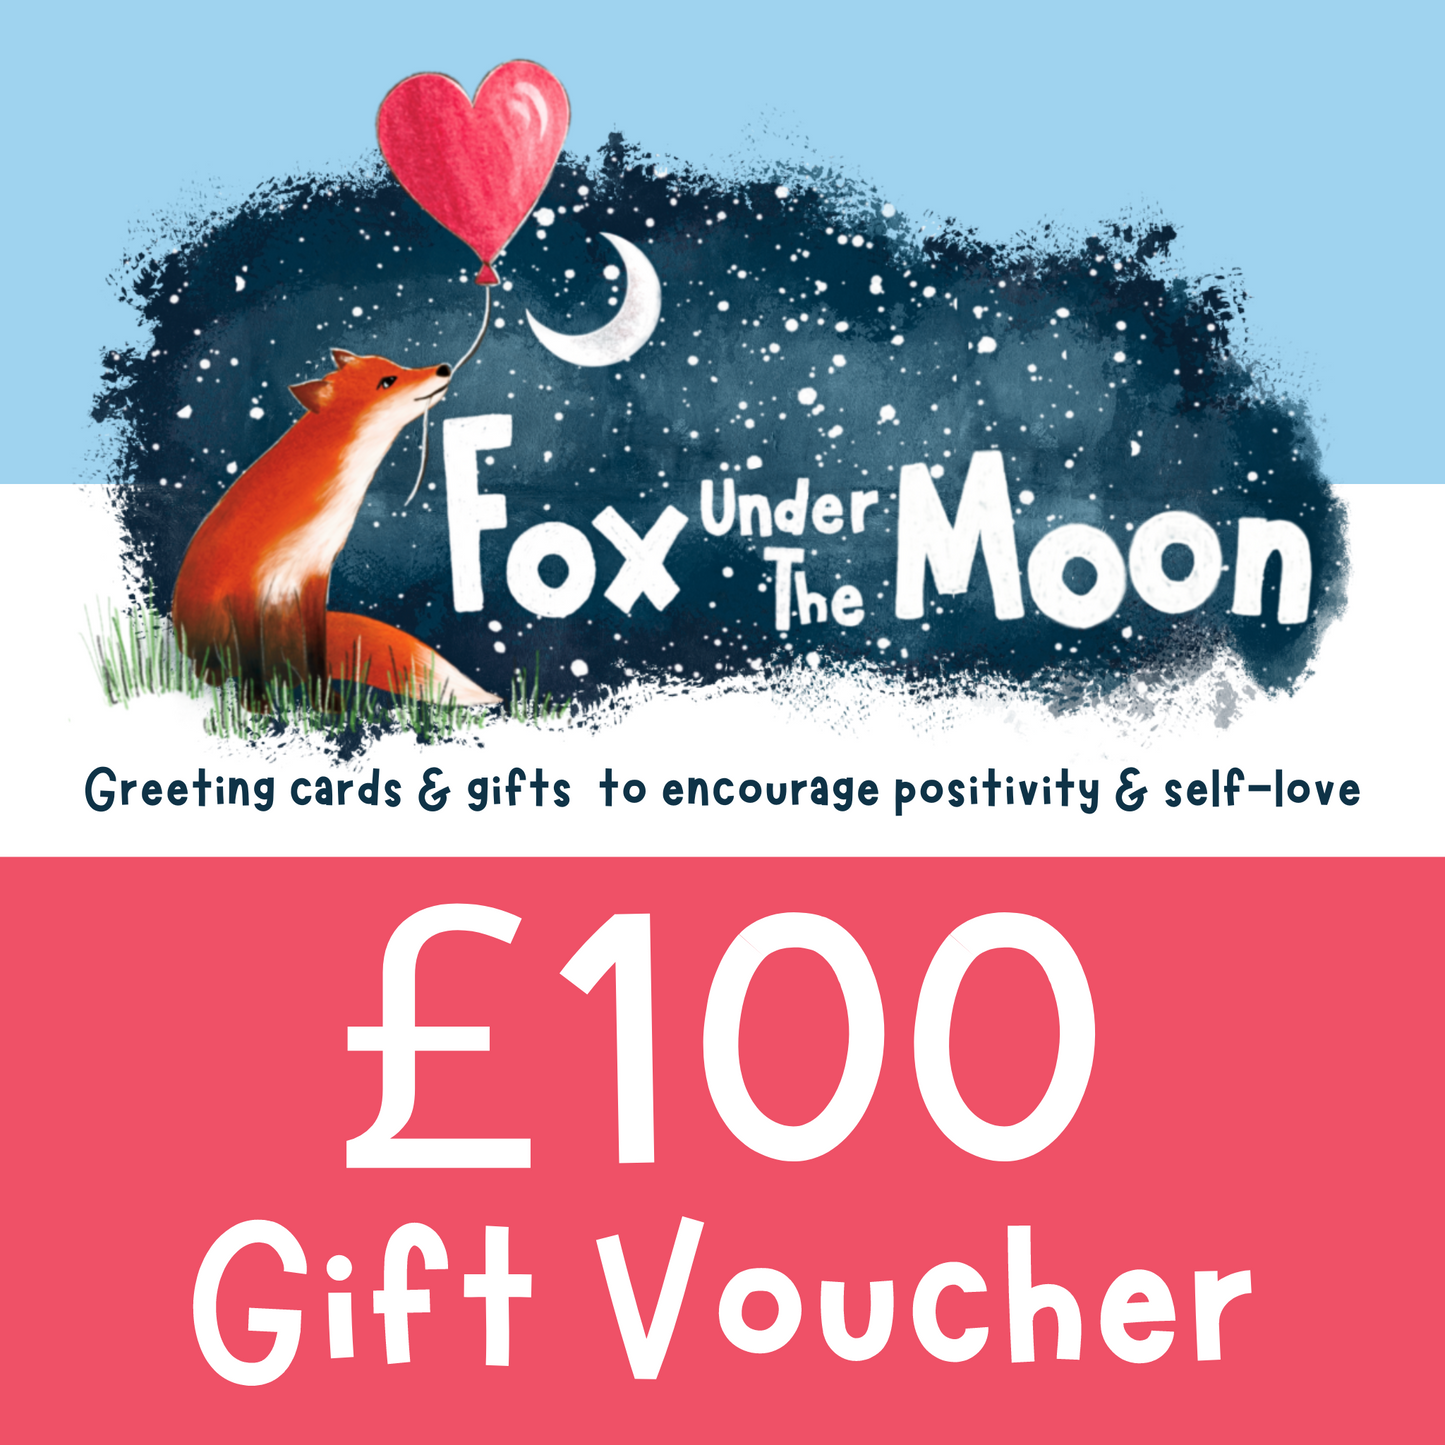 Fox Under The Moon Gift Voucher